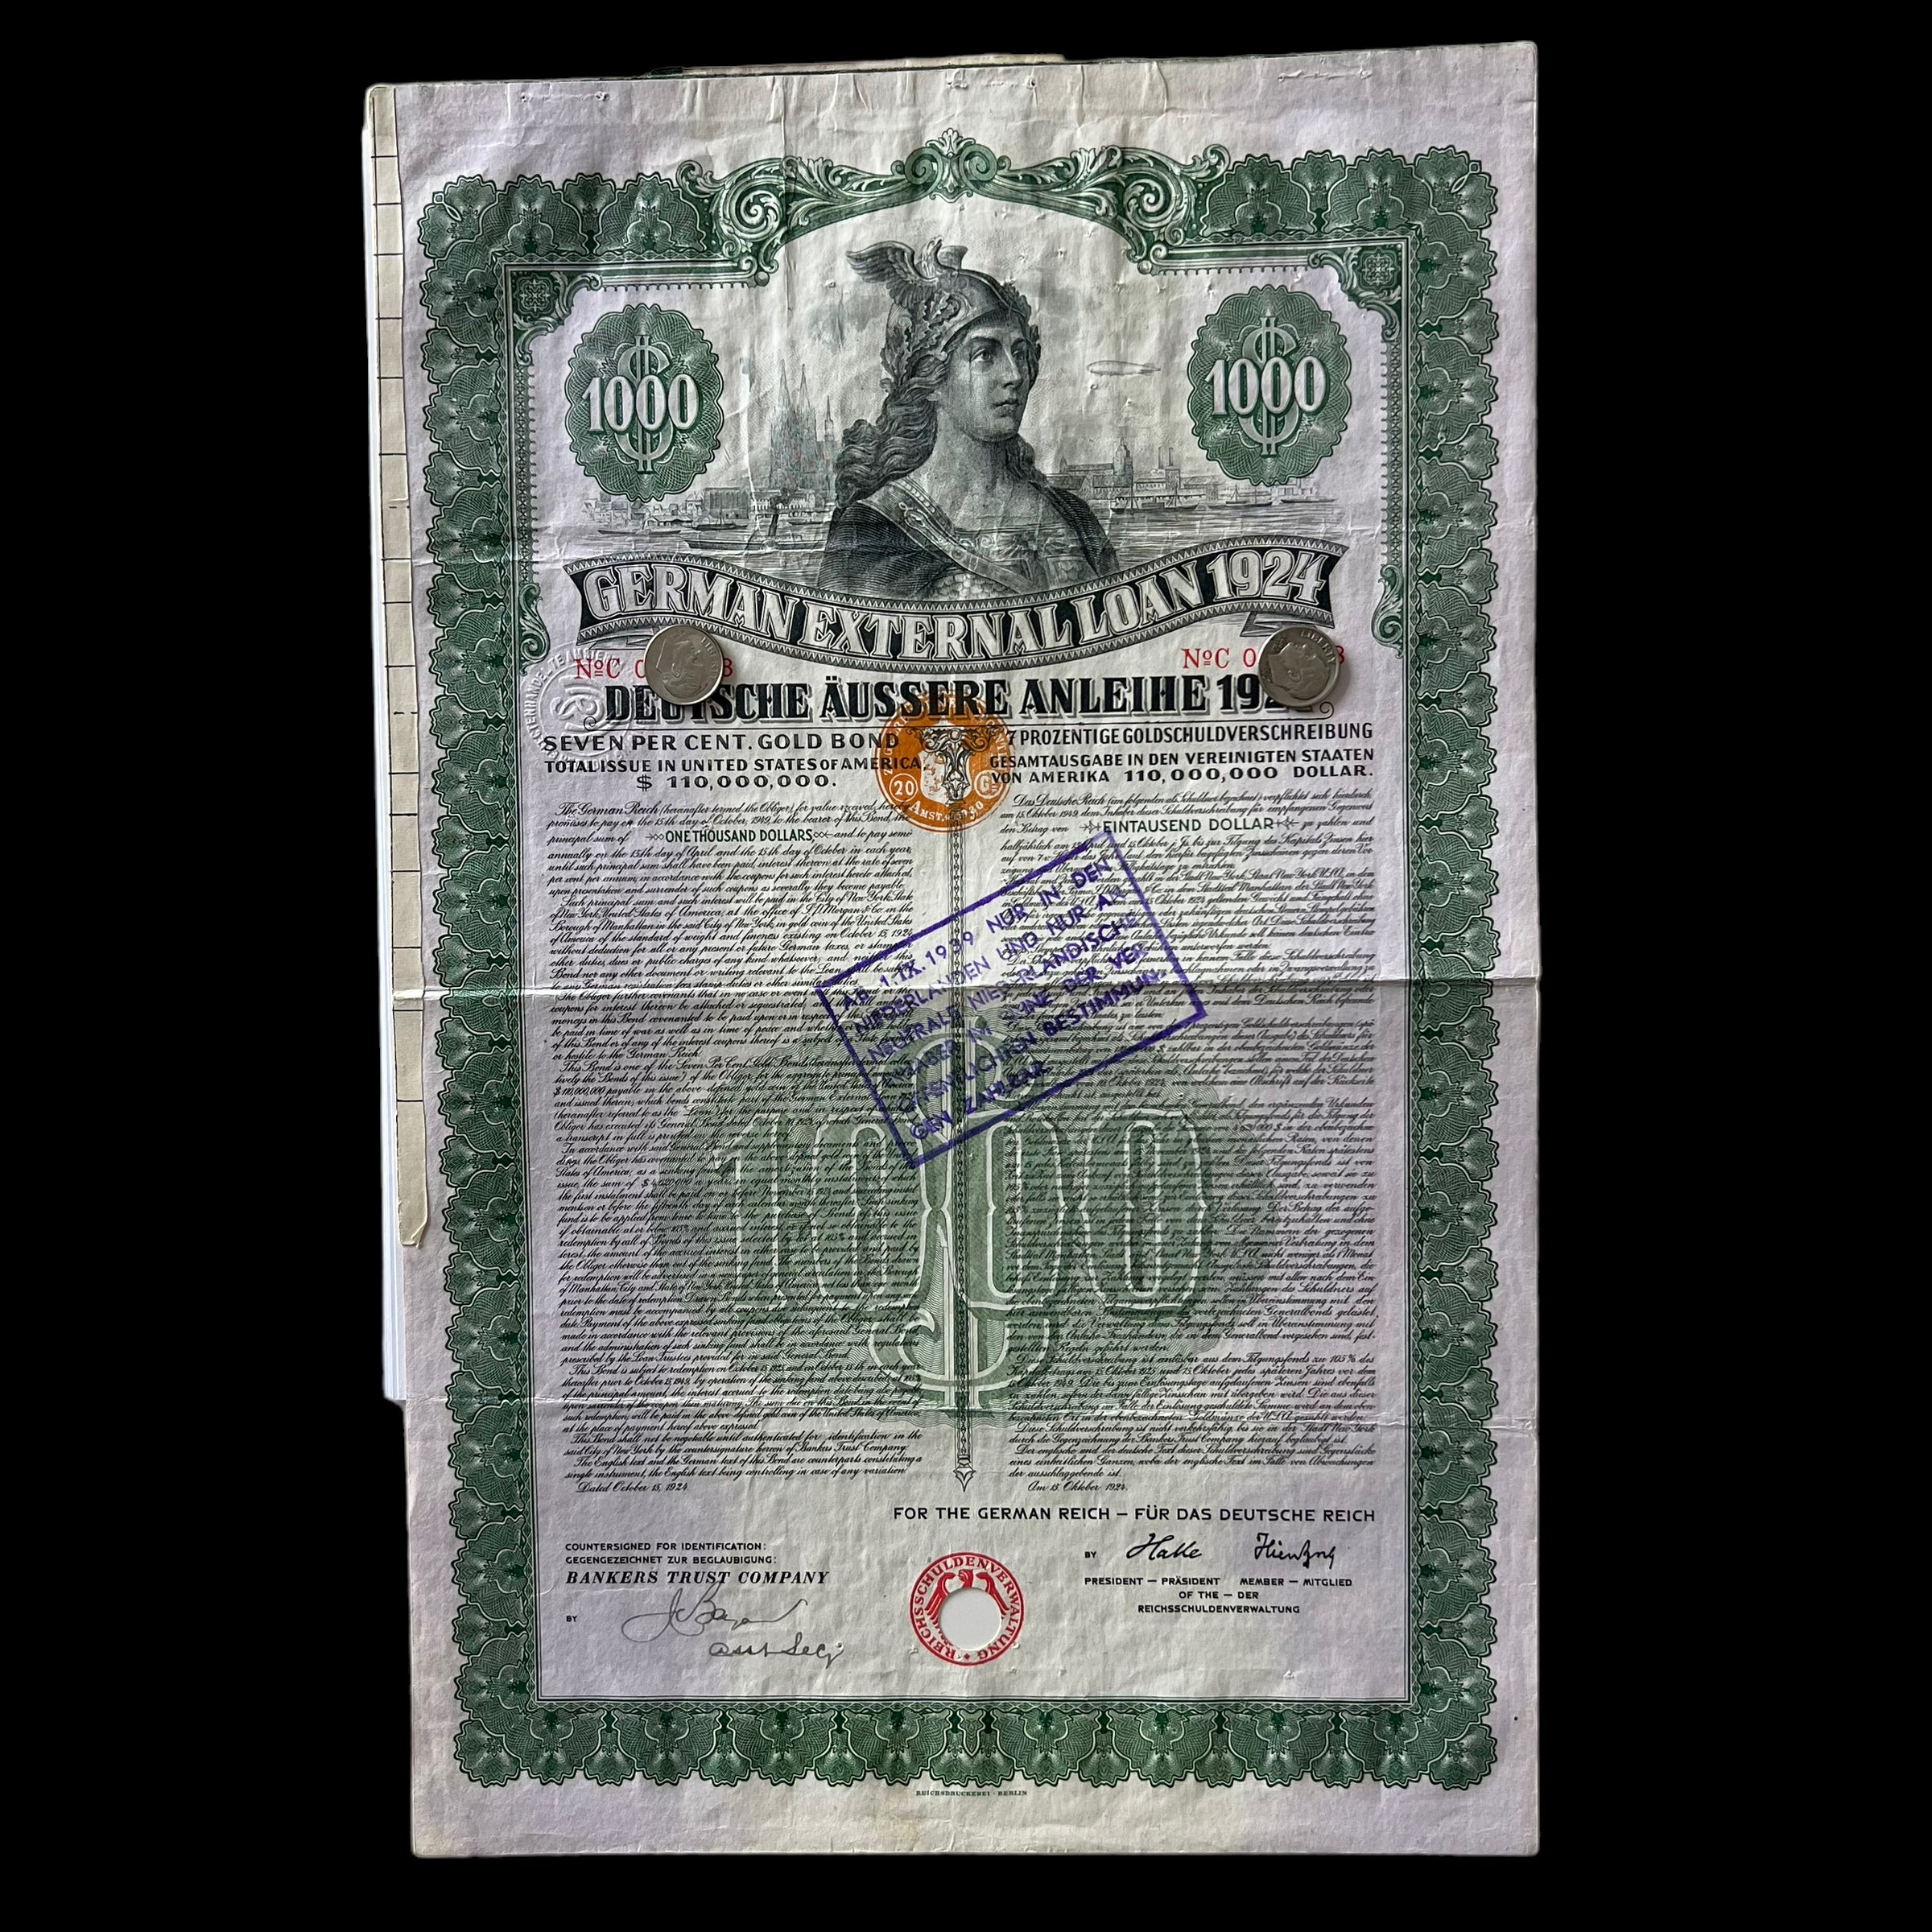 Préstamo externo alemán de 1924 – Bono de oro del 7% – $1000 – Con certificación Passco